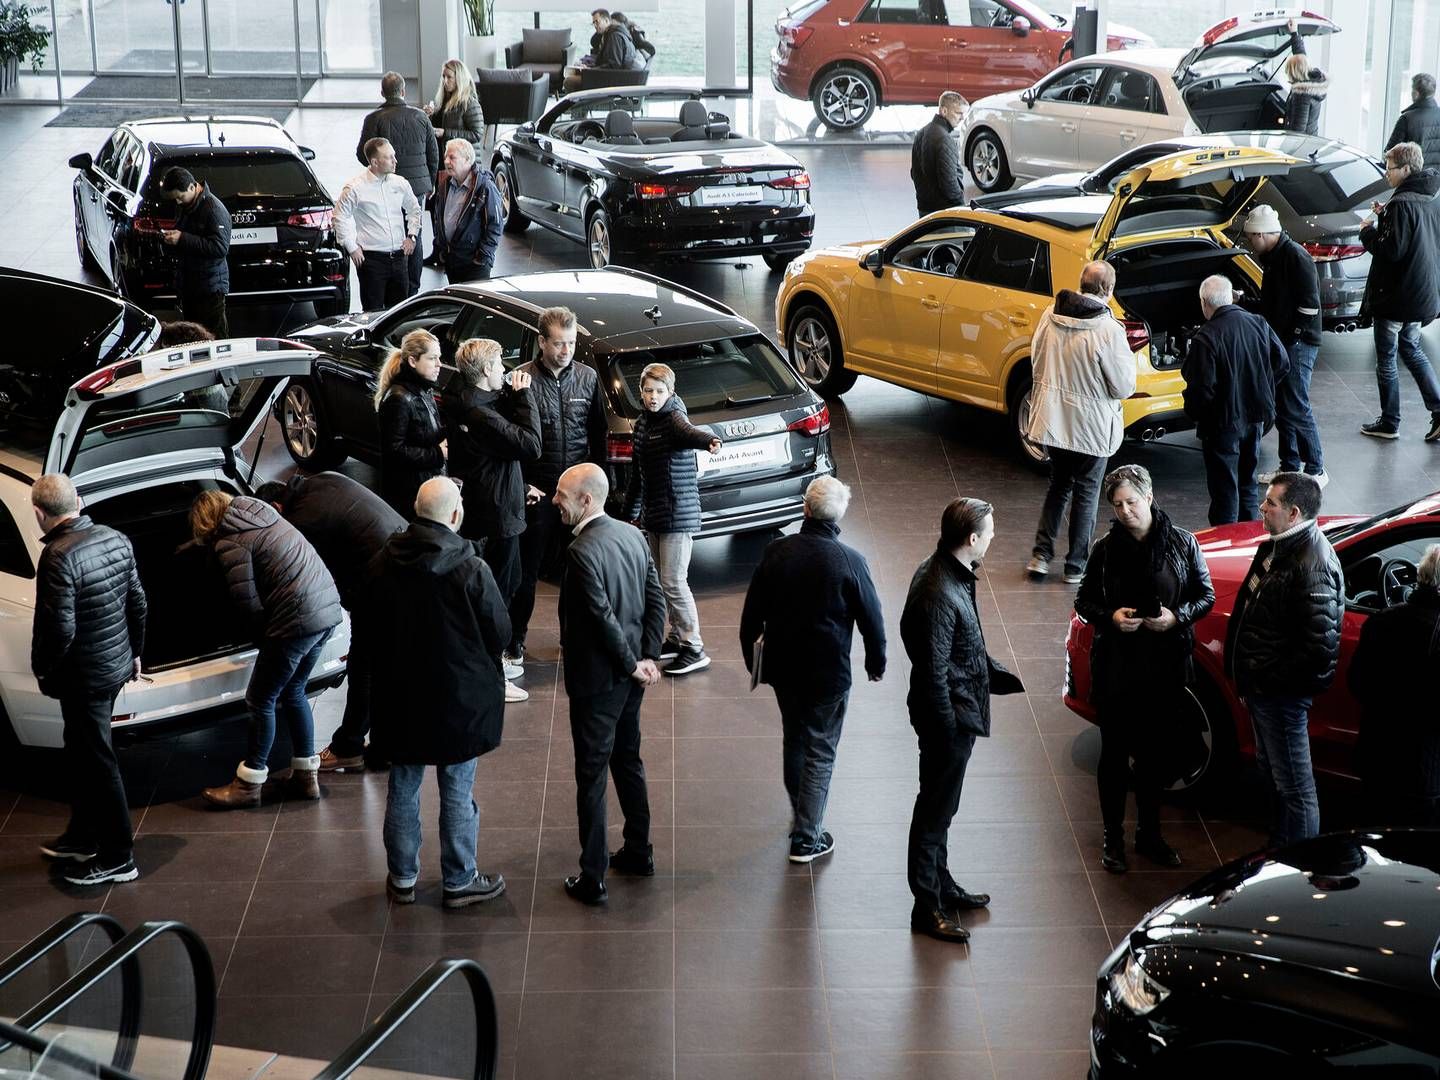 De danske bilforhandlere har i 10 ud af de seneste 39 måneder haft positive forventninger til fremtiden. | Foto: Peter Hove Olesen/Politiken/Ritzau Scanpix